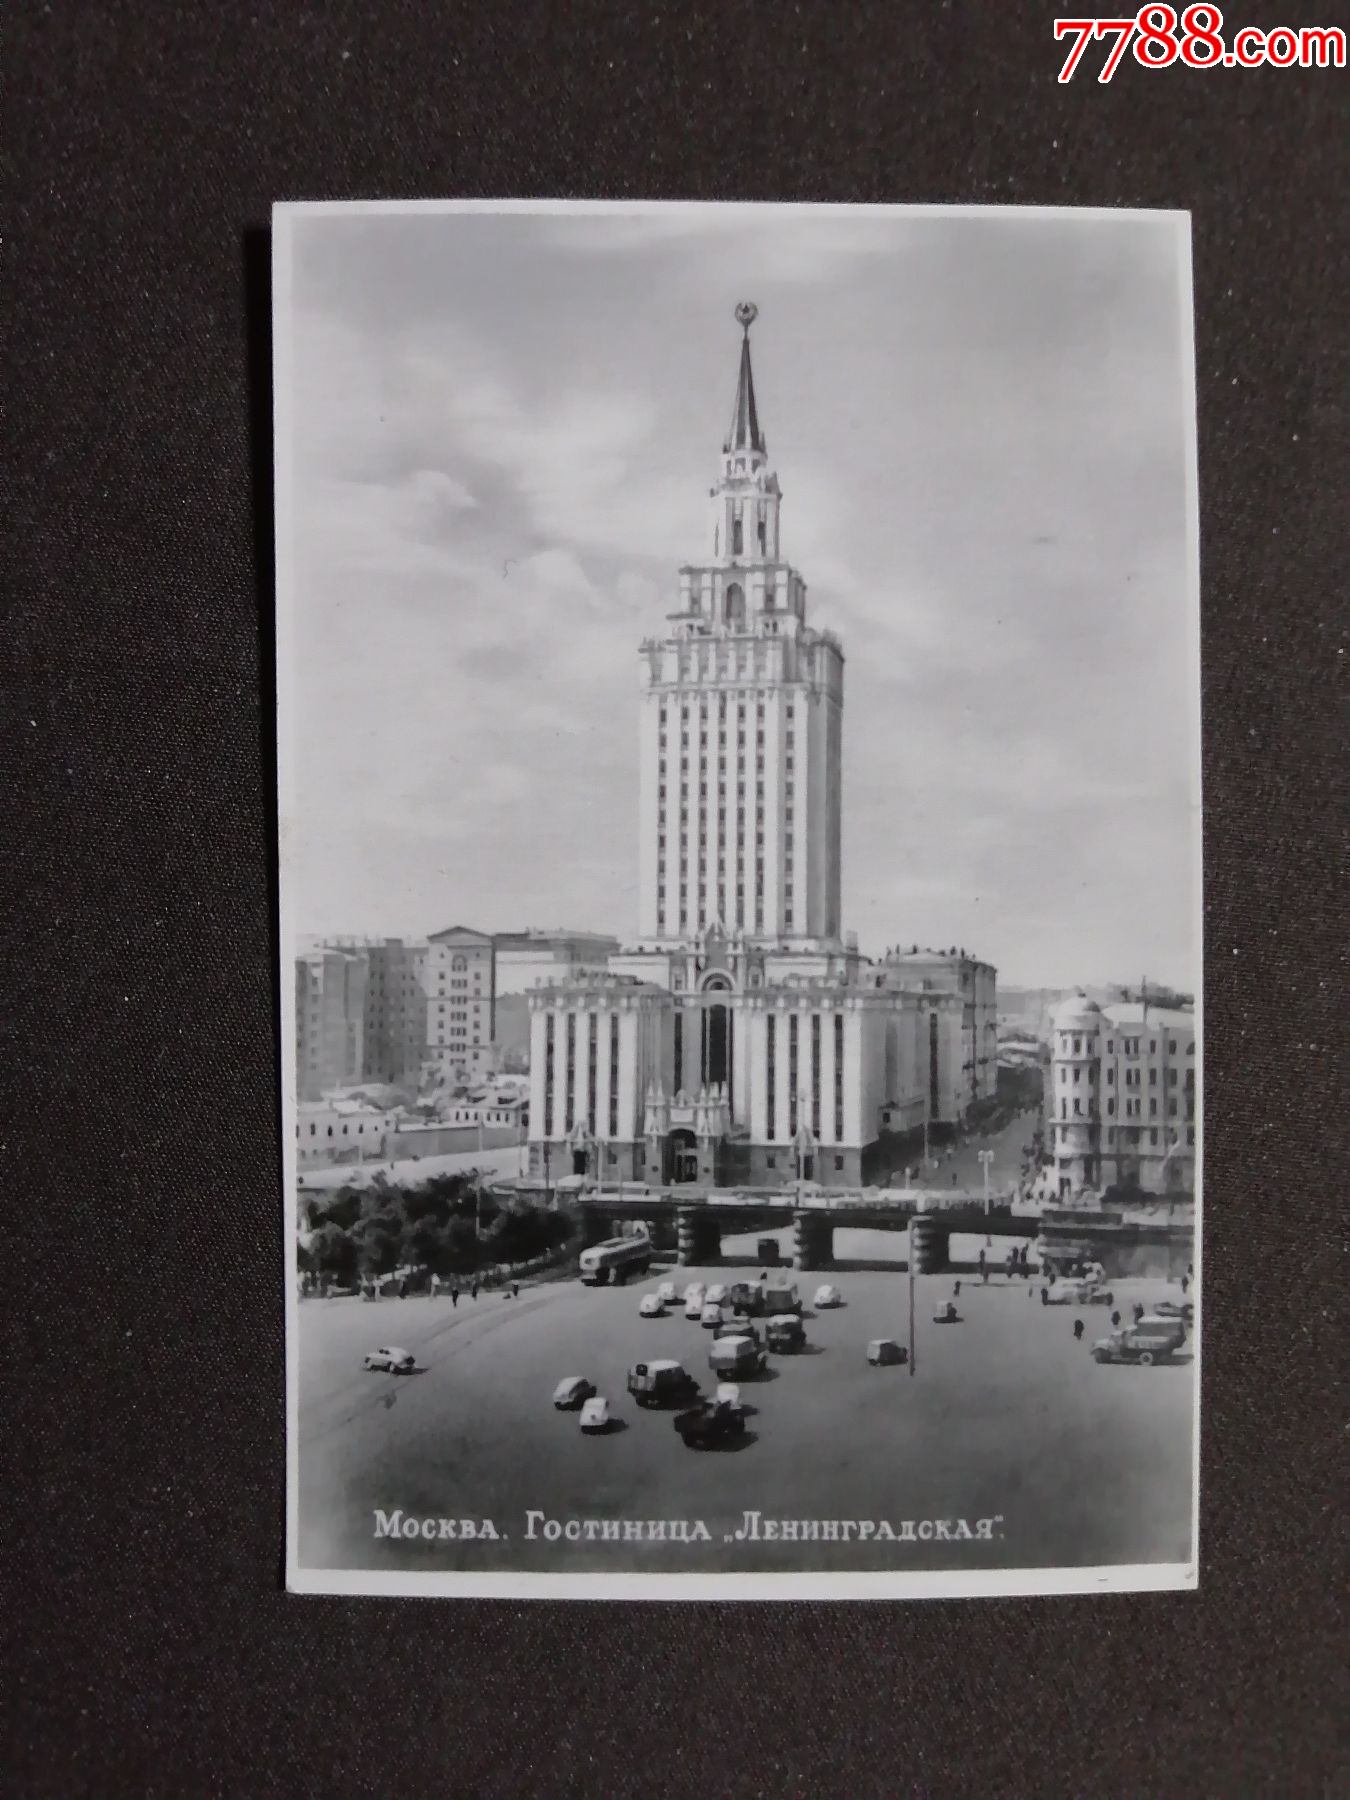 苏联七姐妹楼图片